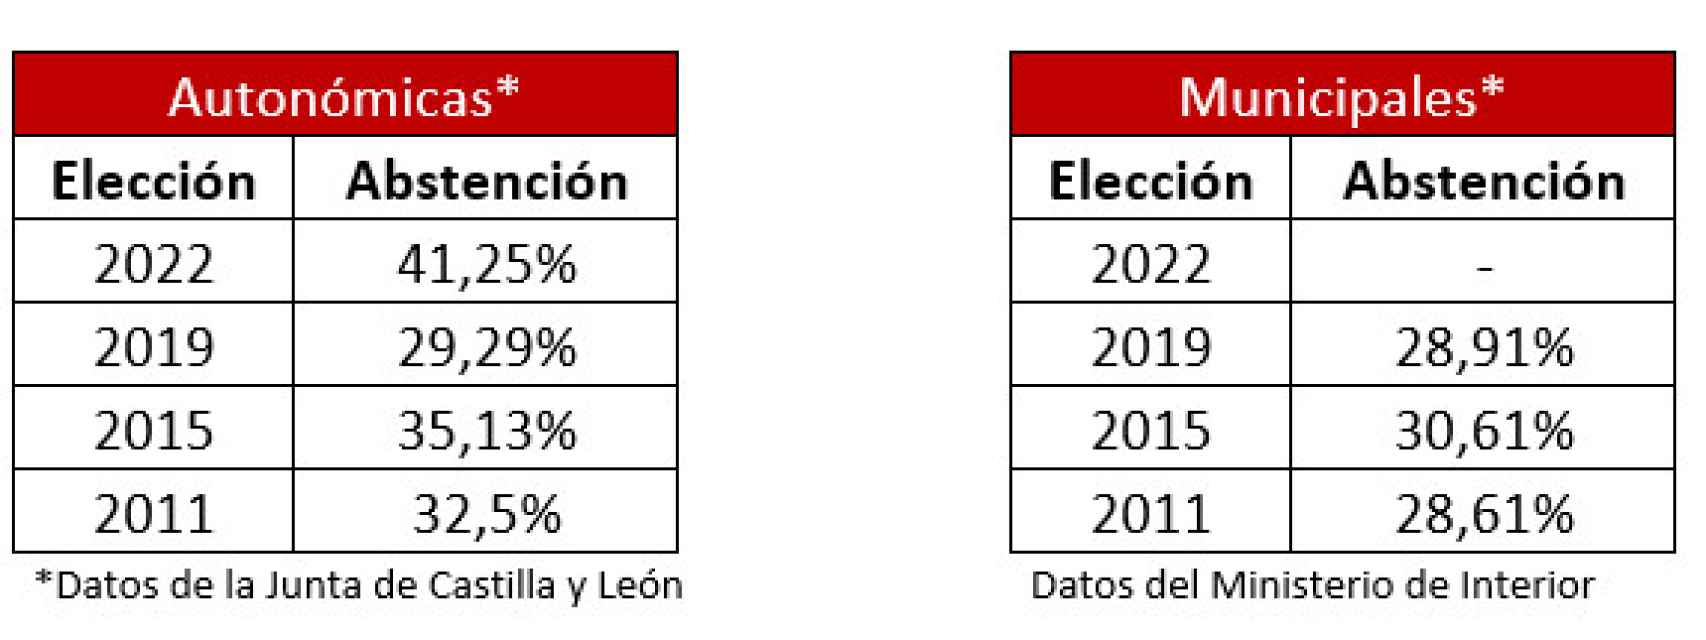 Datos del porcentaje de abstención en las últimas elecciones autonómicas y municipales en Castilla y León.